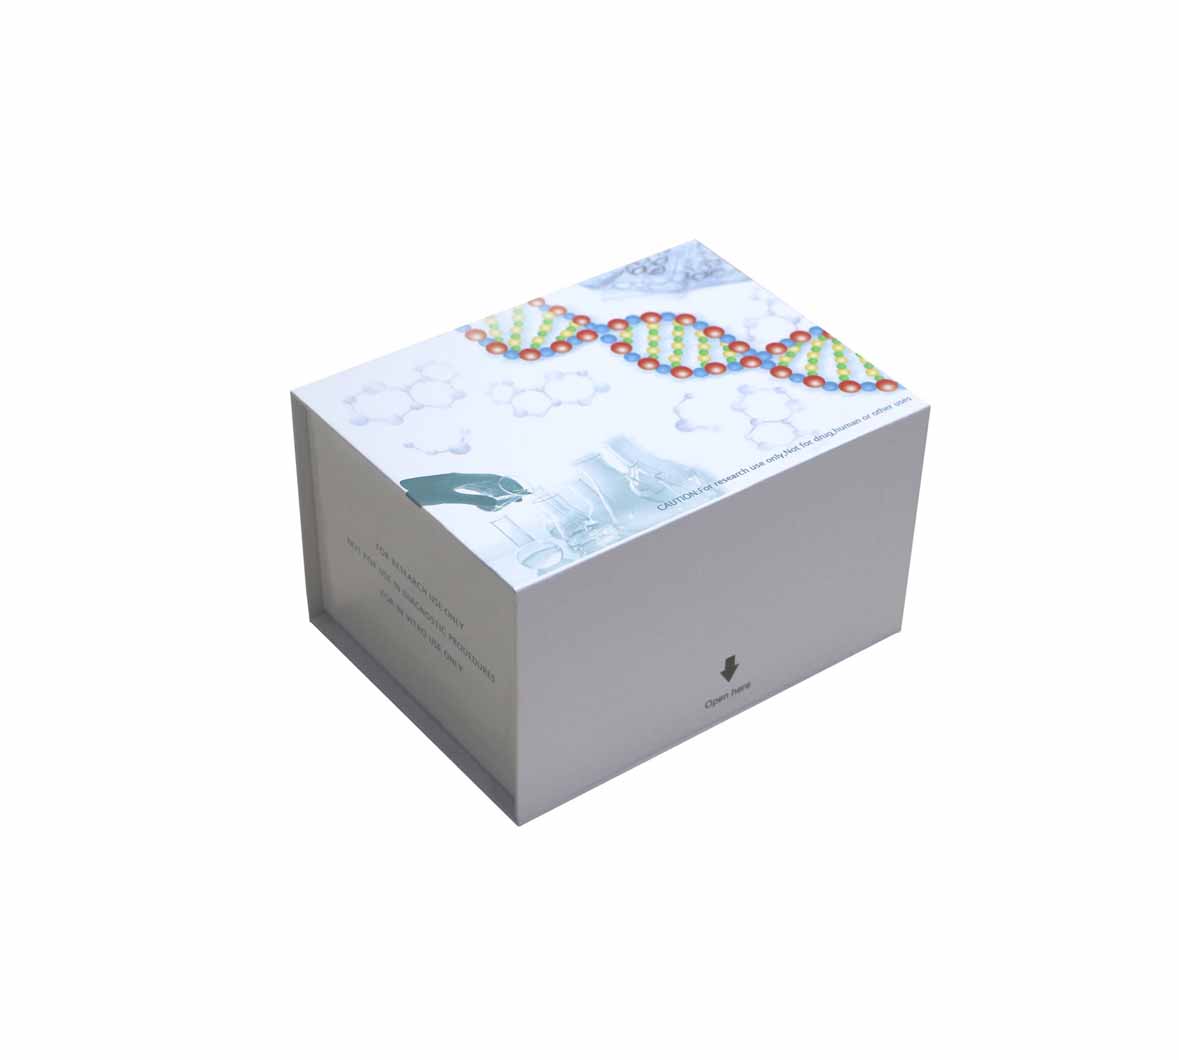 人X-连锁凋亡抑制蛋白(XIAP)ELISA测定试剂盒